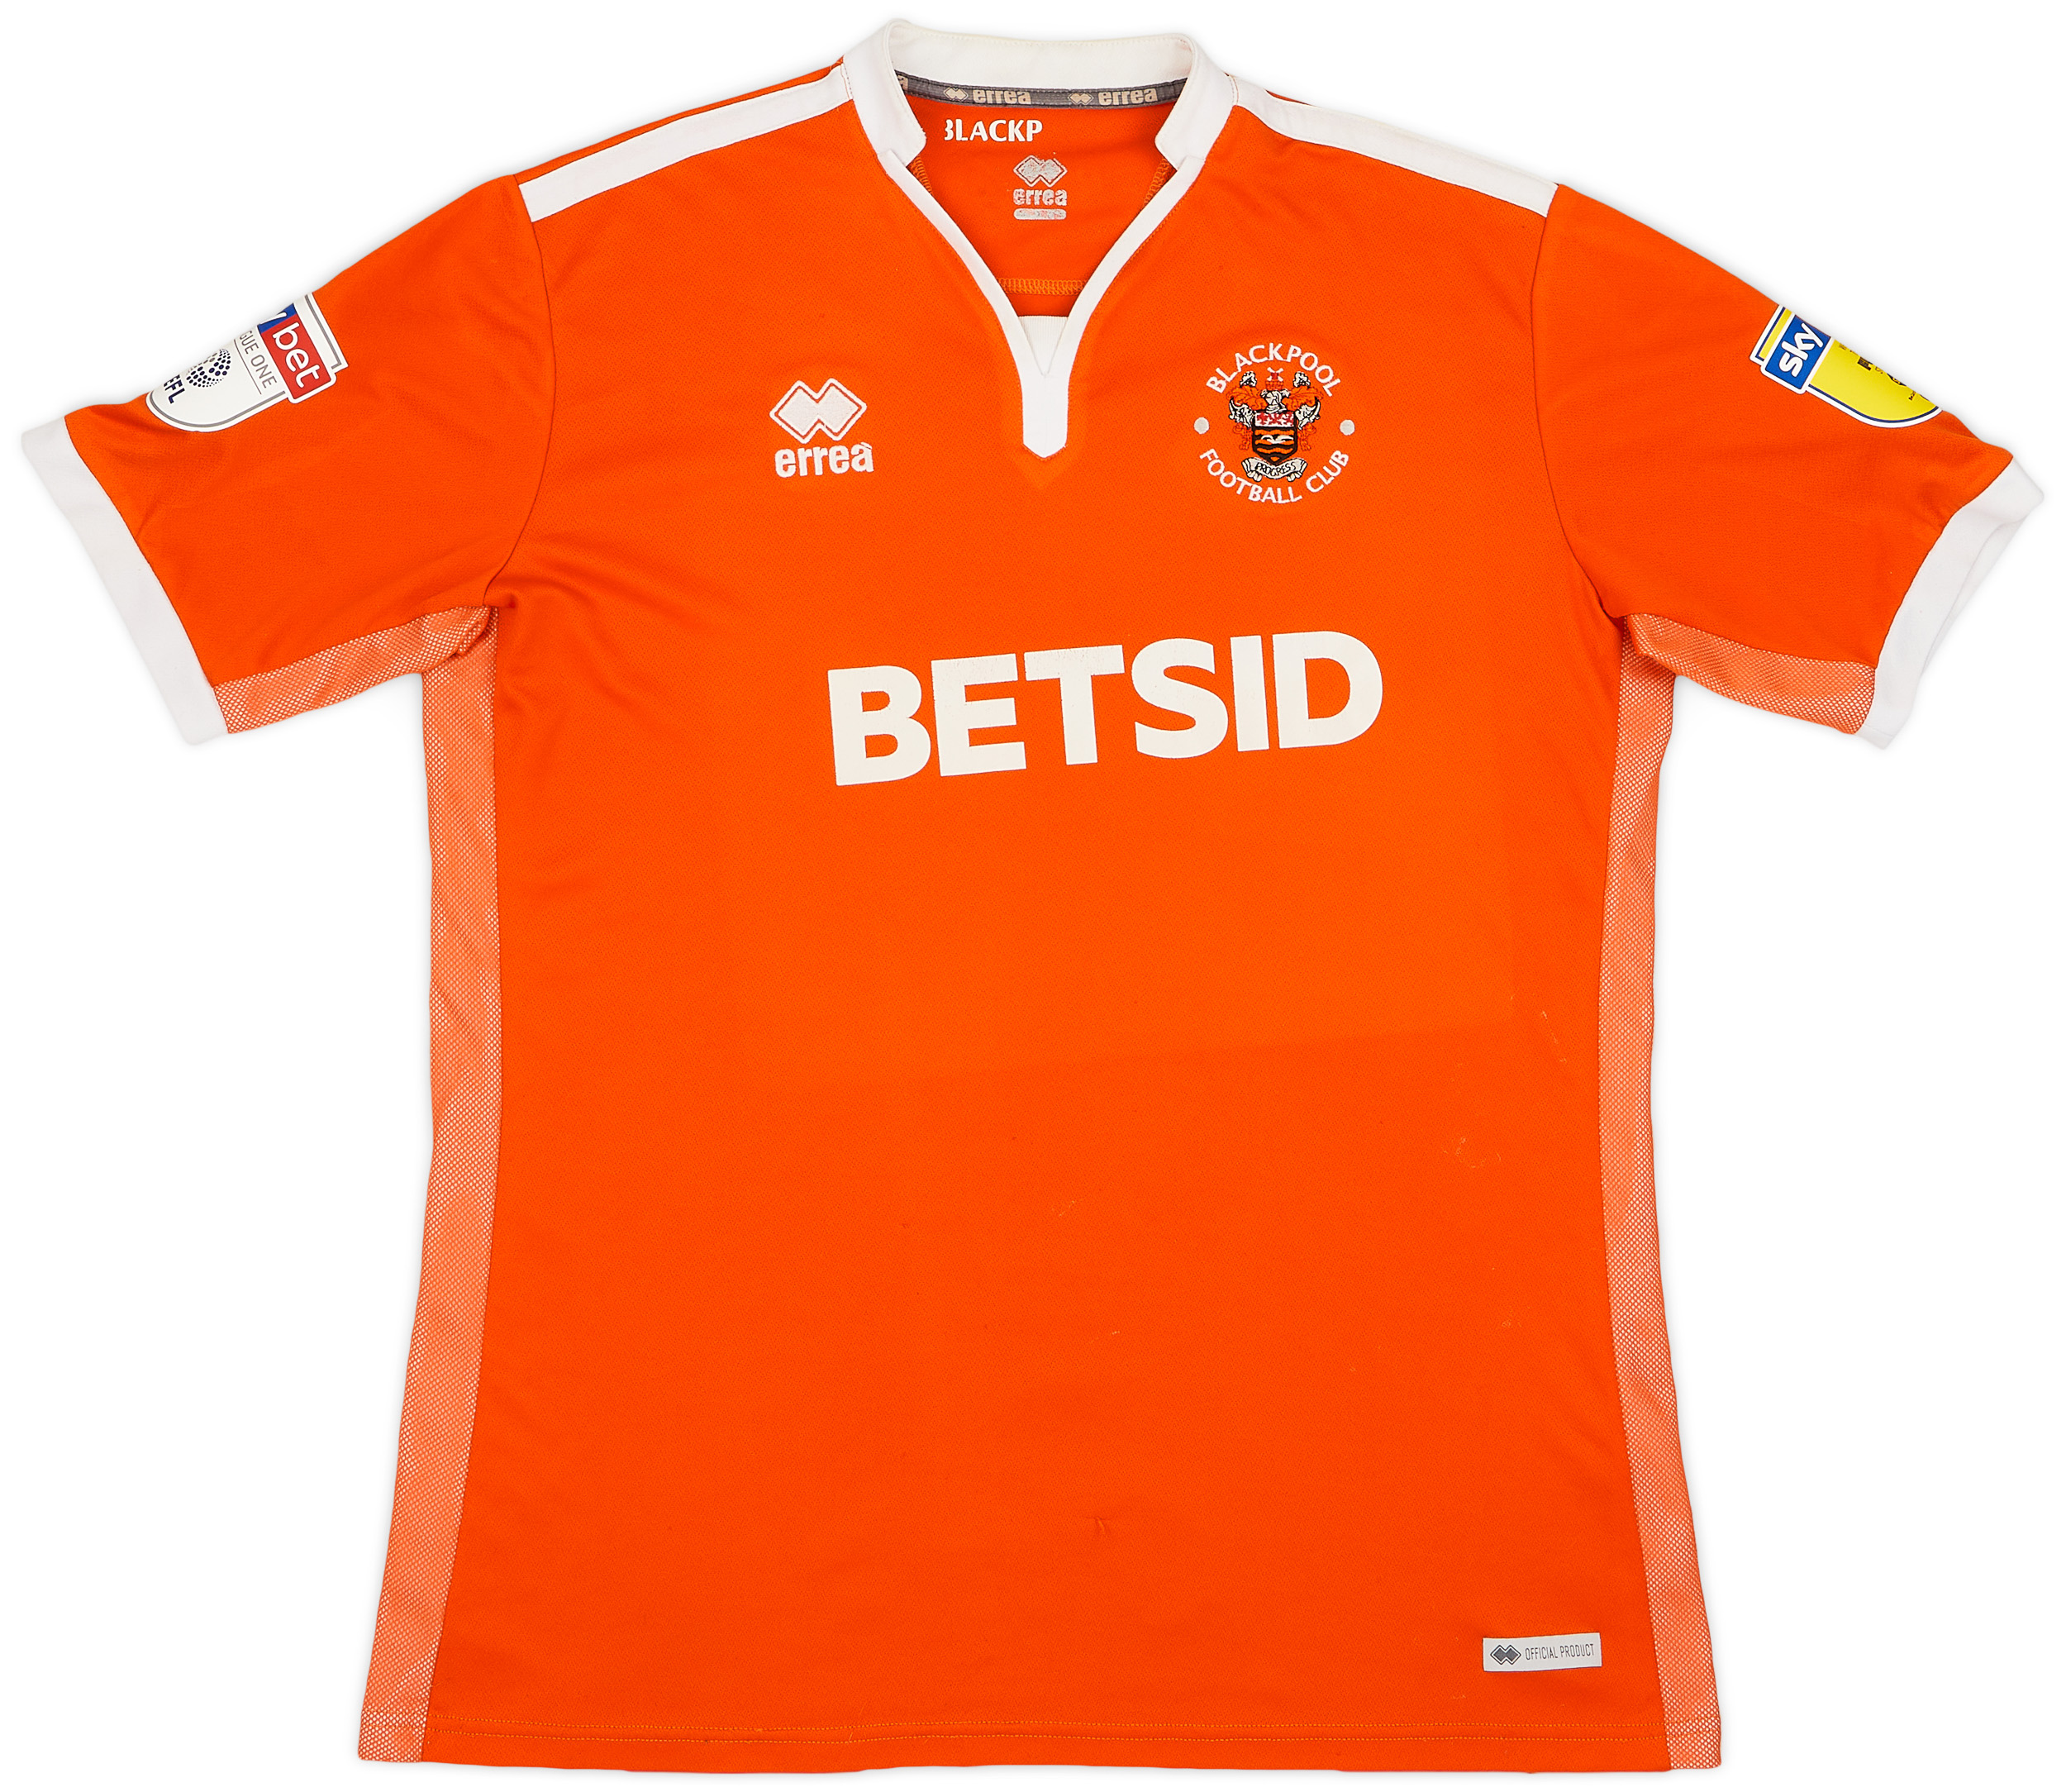 Blackpool  home shirt (Original)